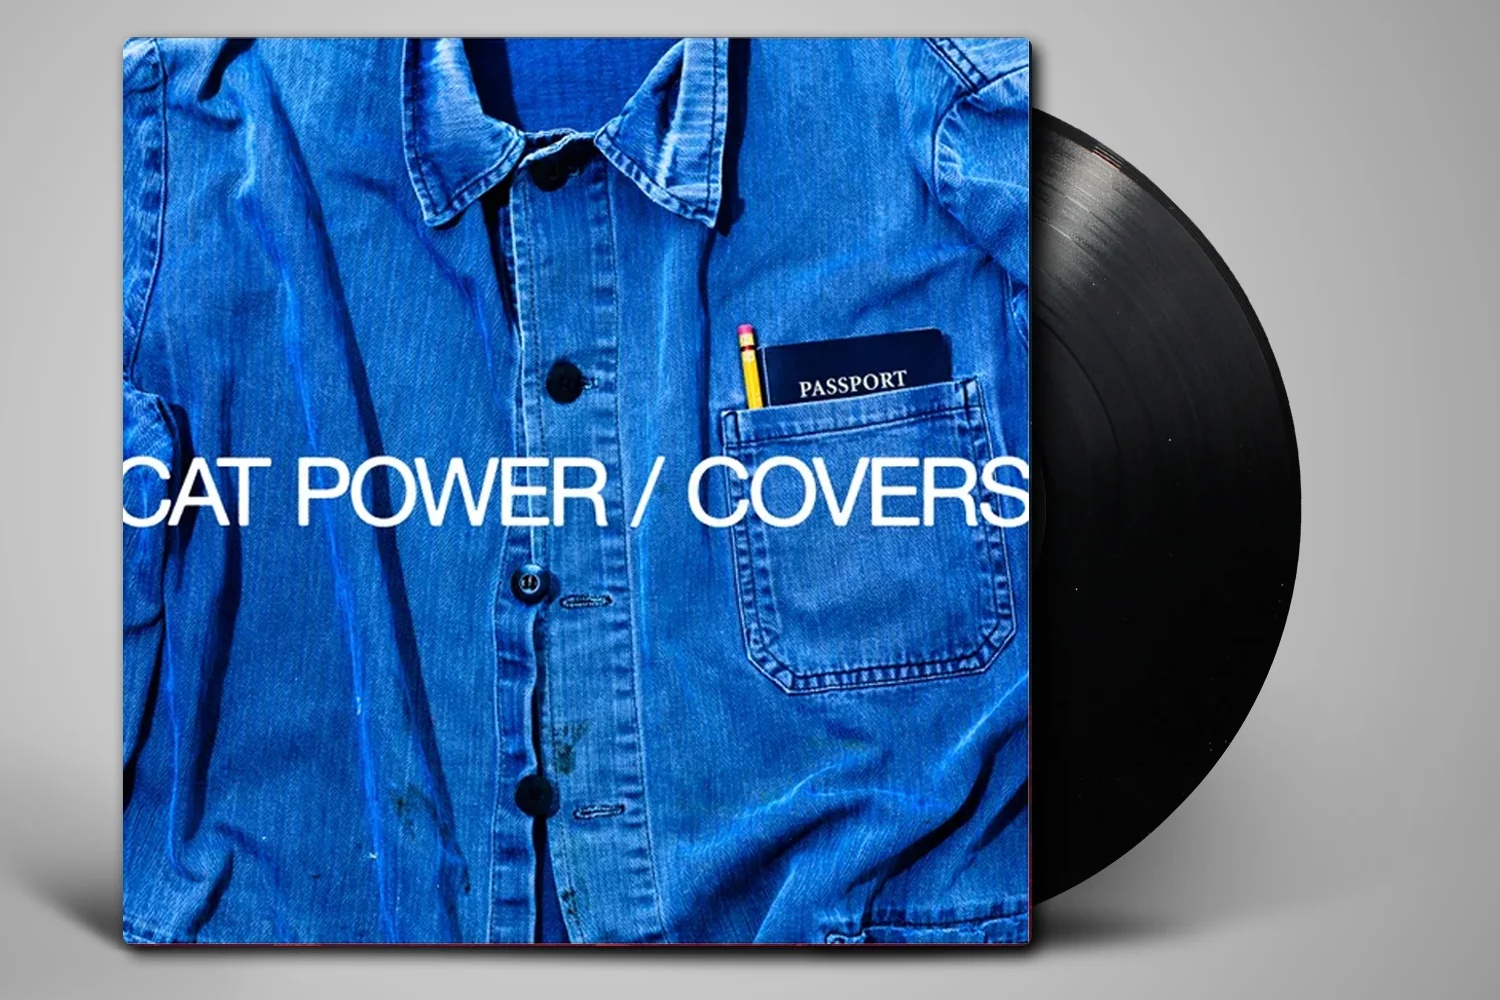 Cat Powers "Covers" vinyl